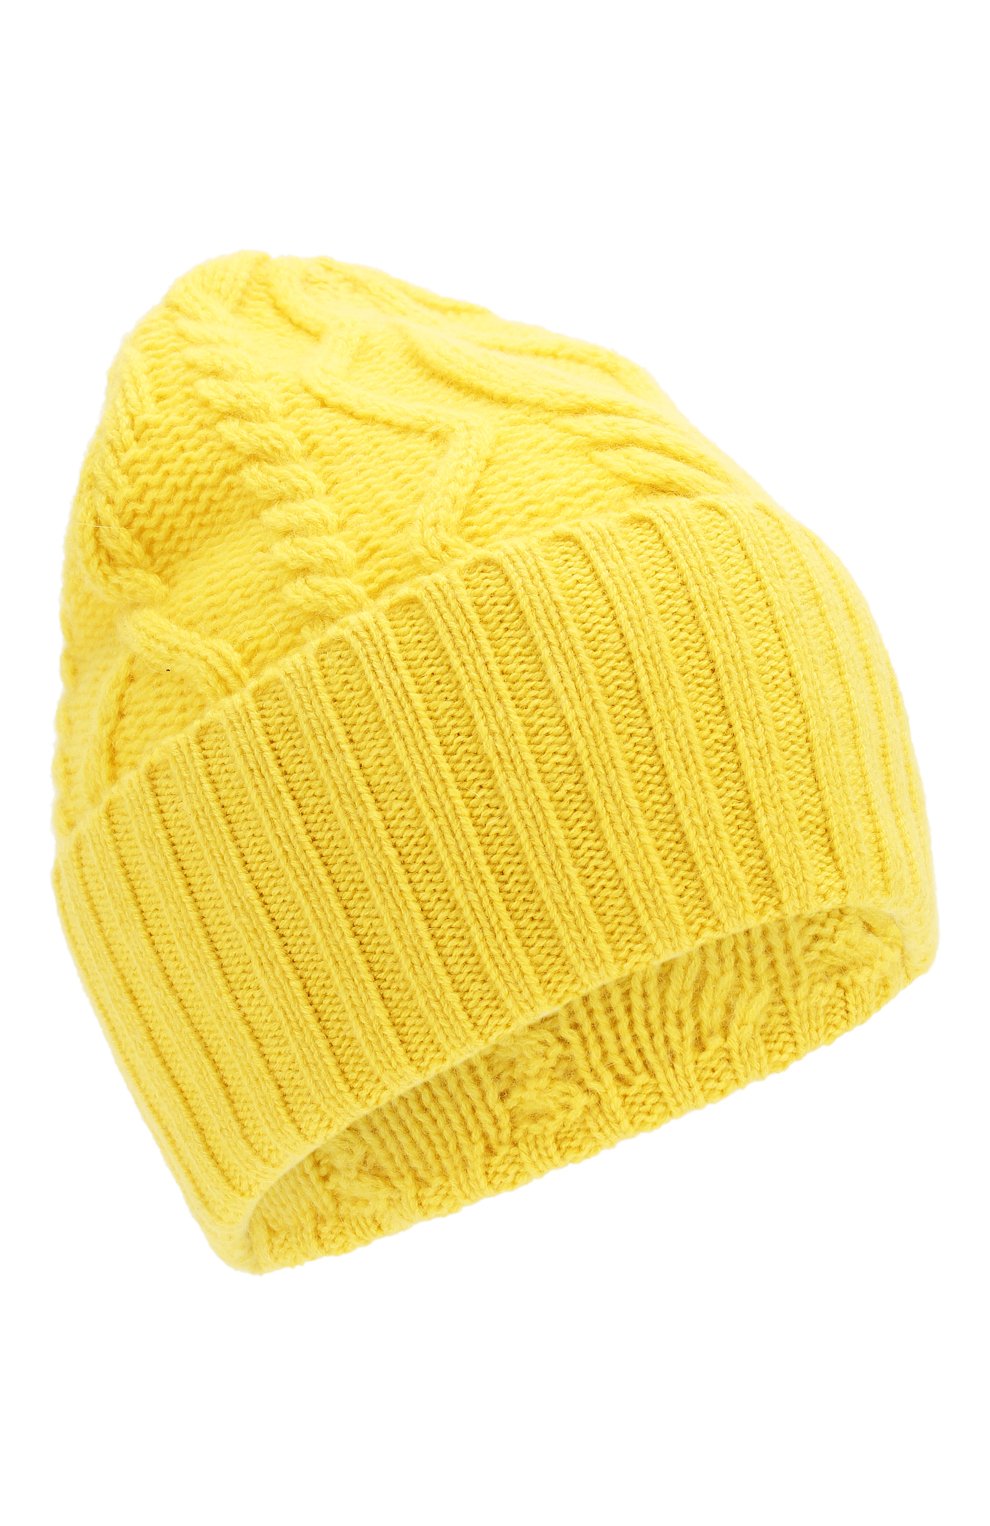 Женская кашемировая шапка FTC желтого цвета, арт. 770-0020 | Фото 1 (Материал: Текстиль, Кашемир, Шерсть)